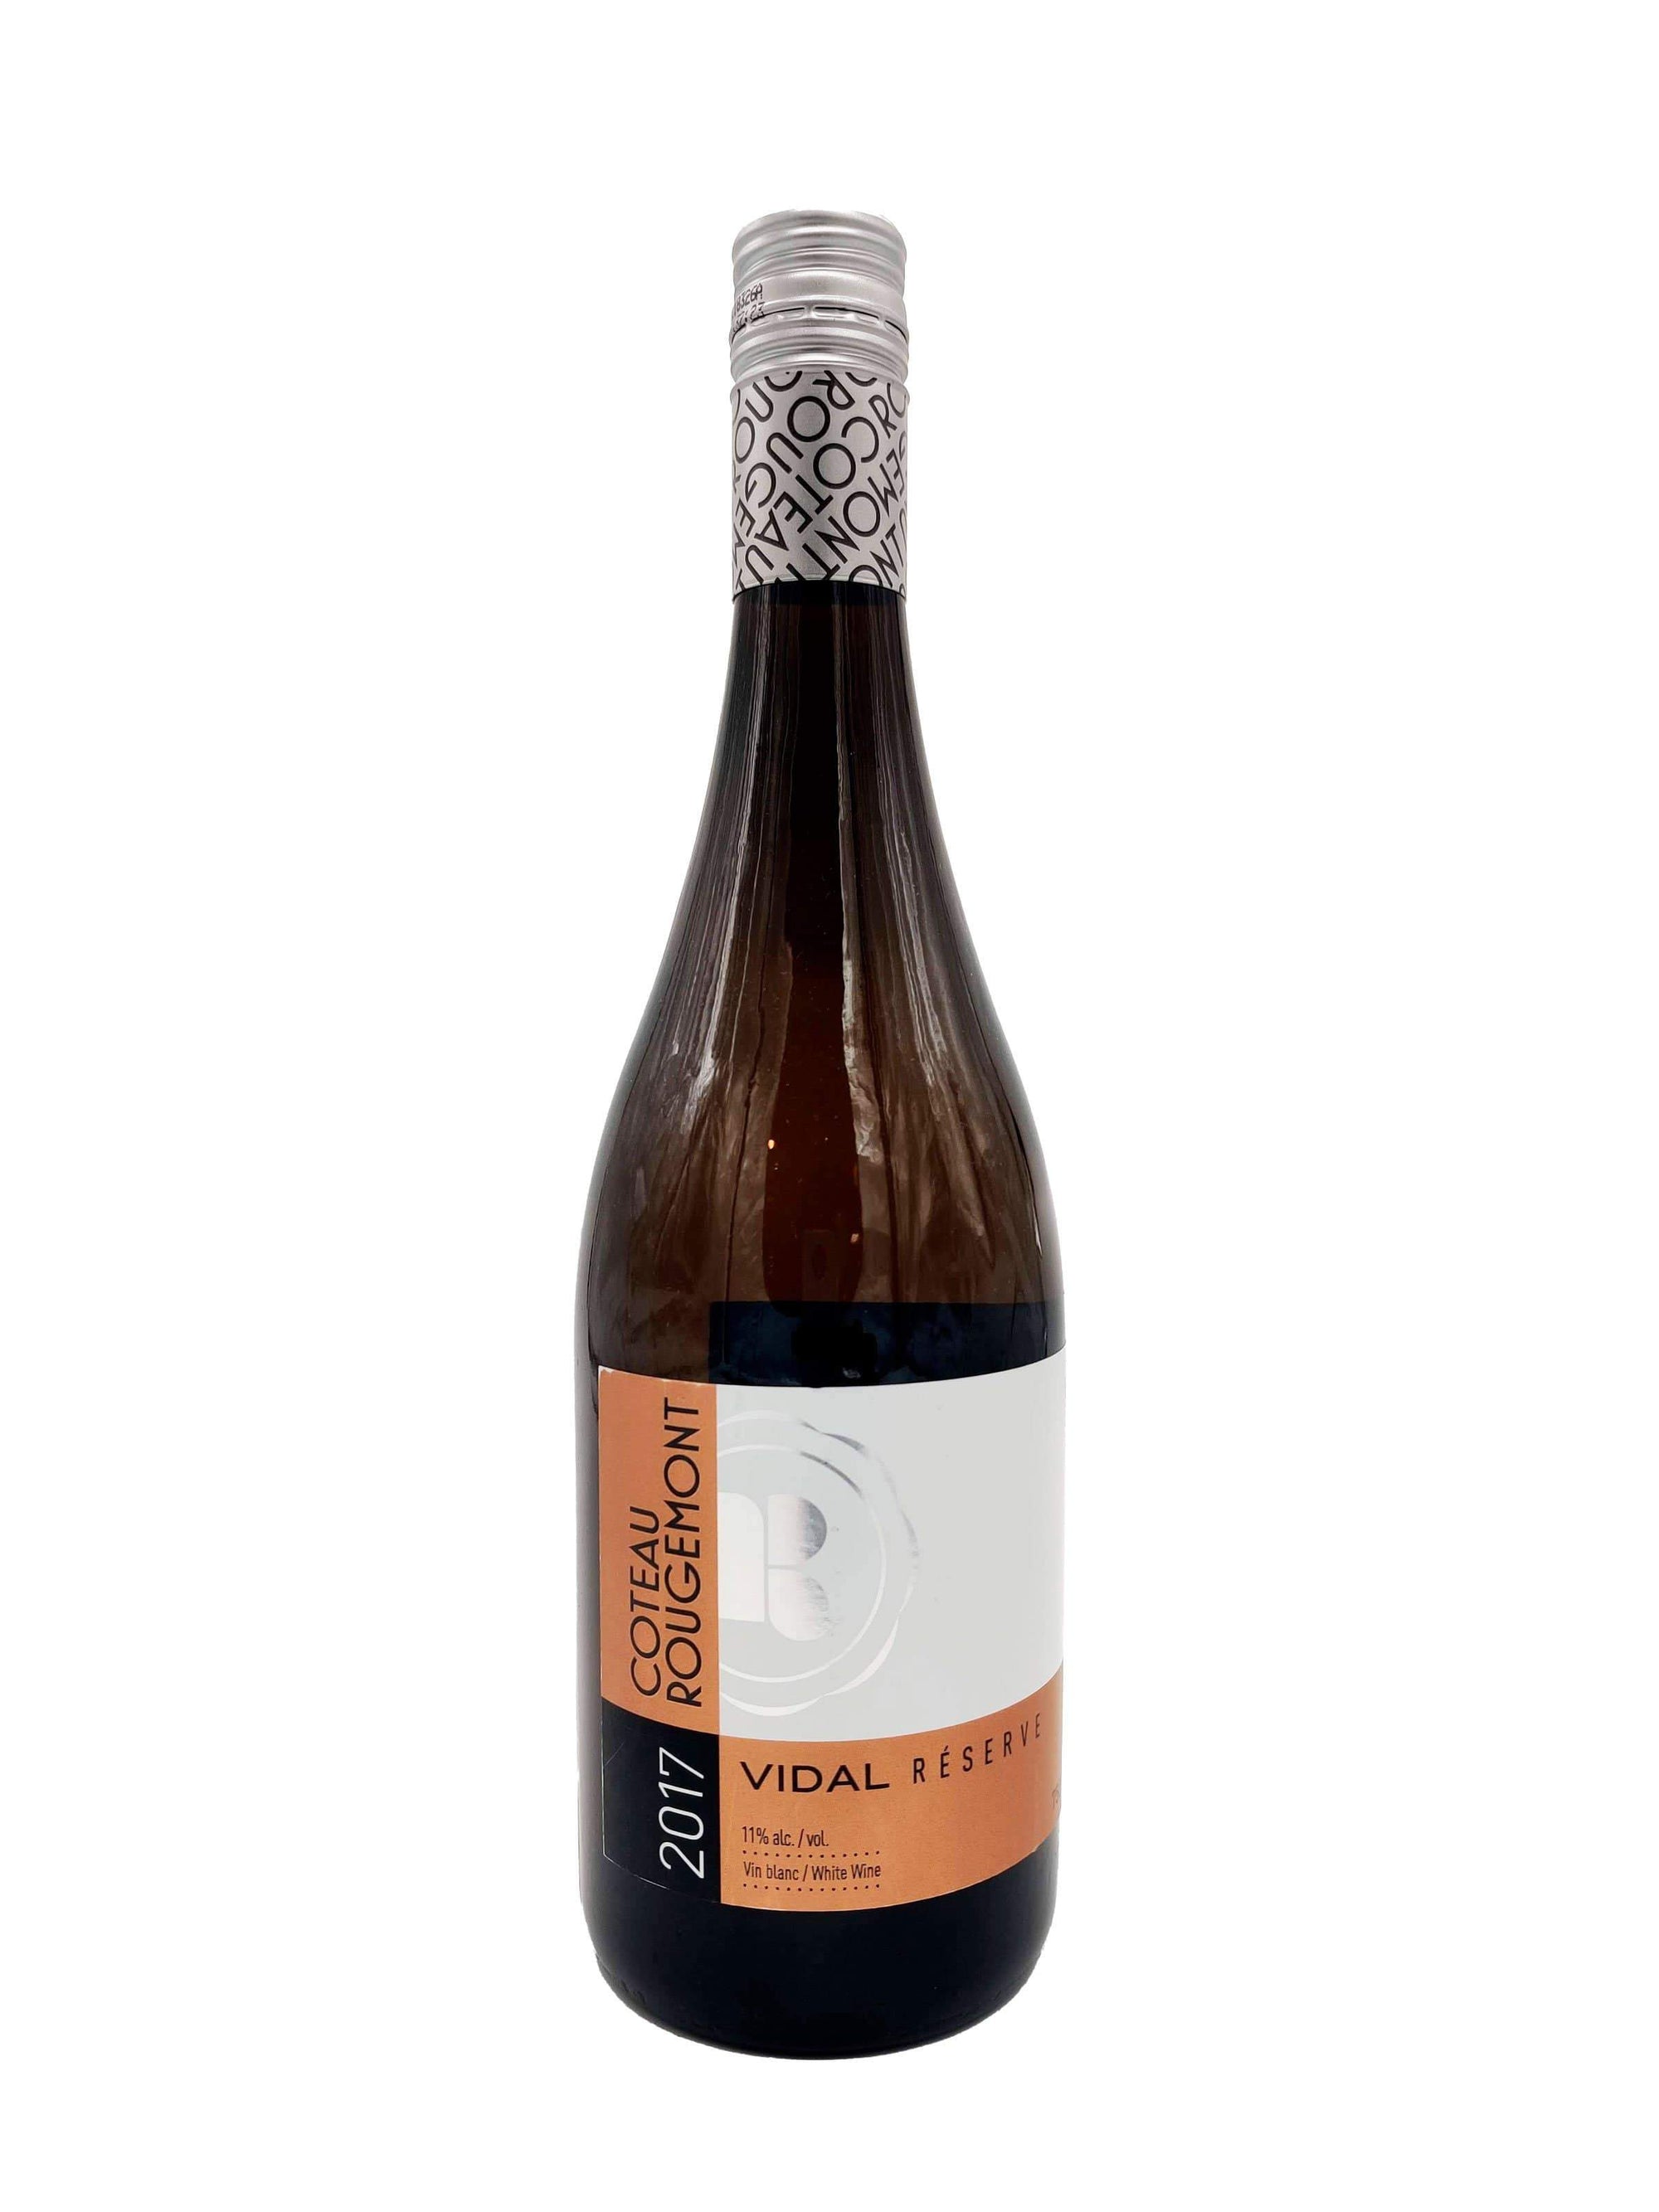 Vidal Réserve - Vin blanc du Coteau Rougemont